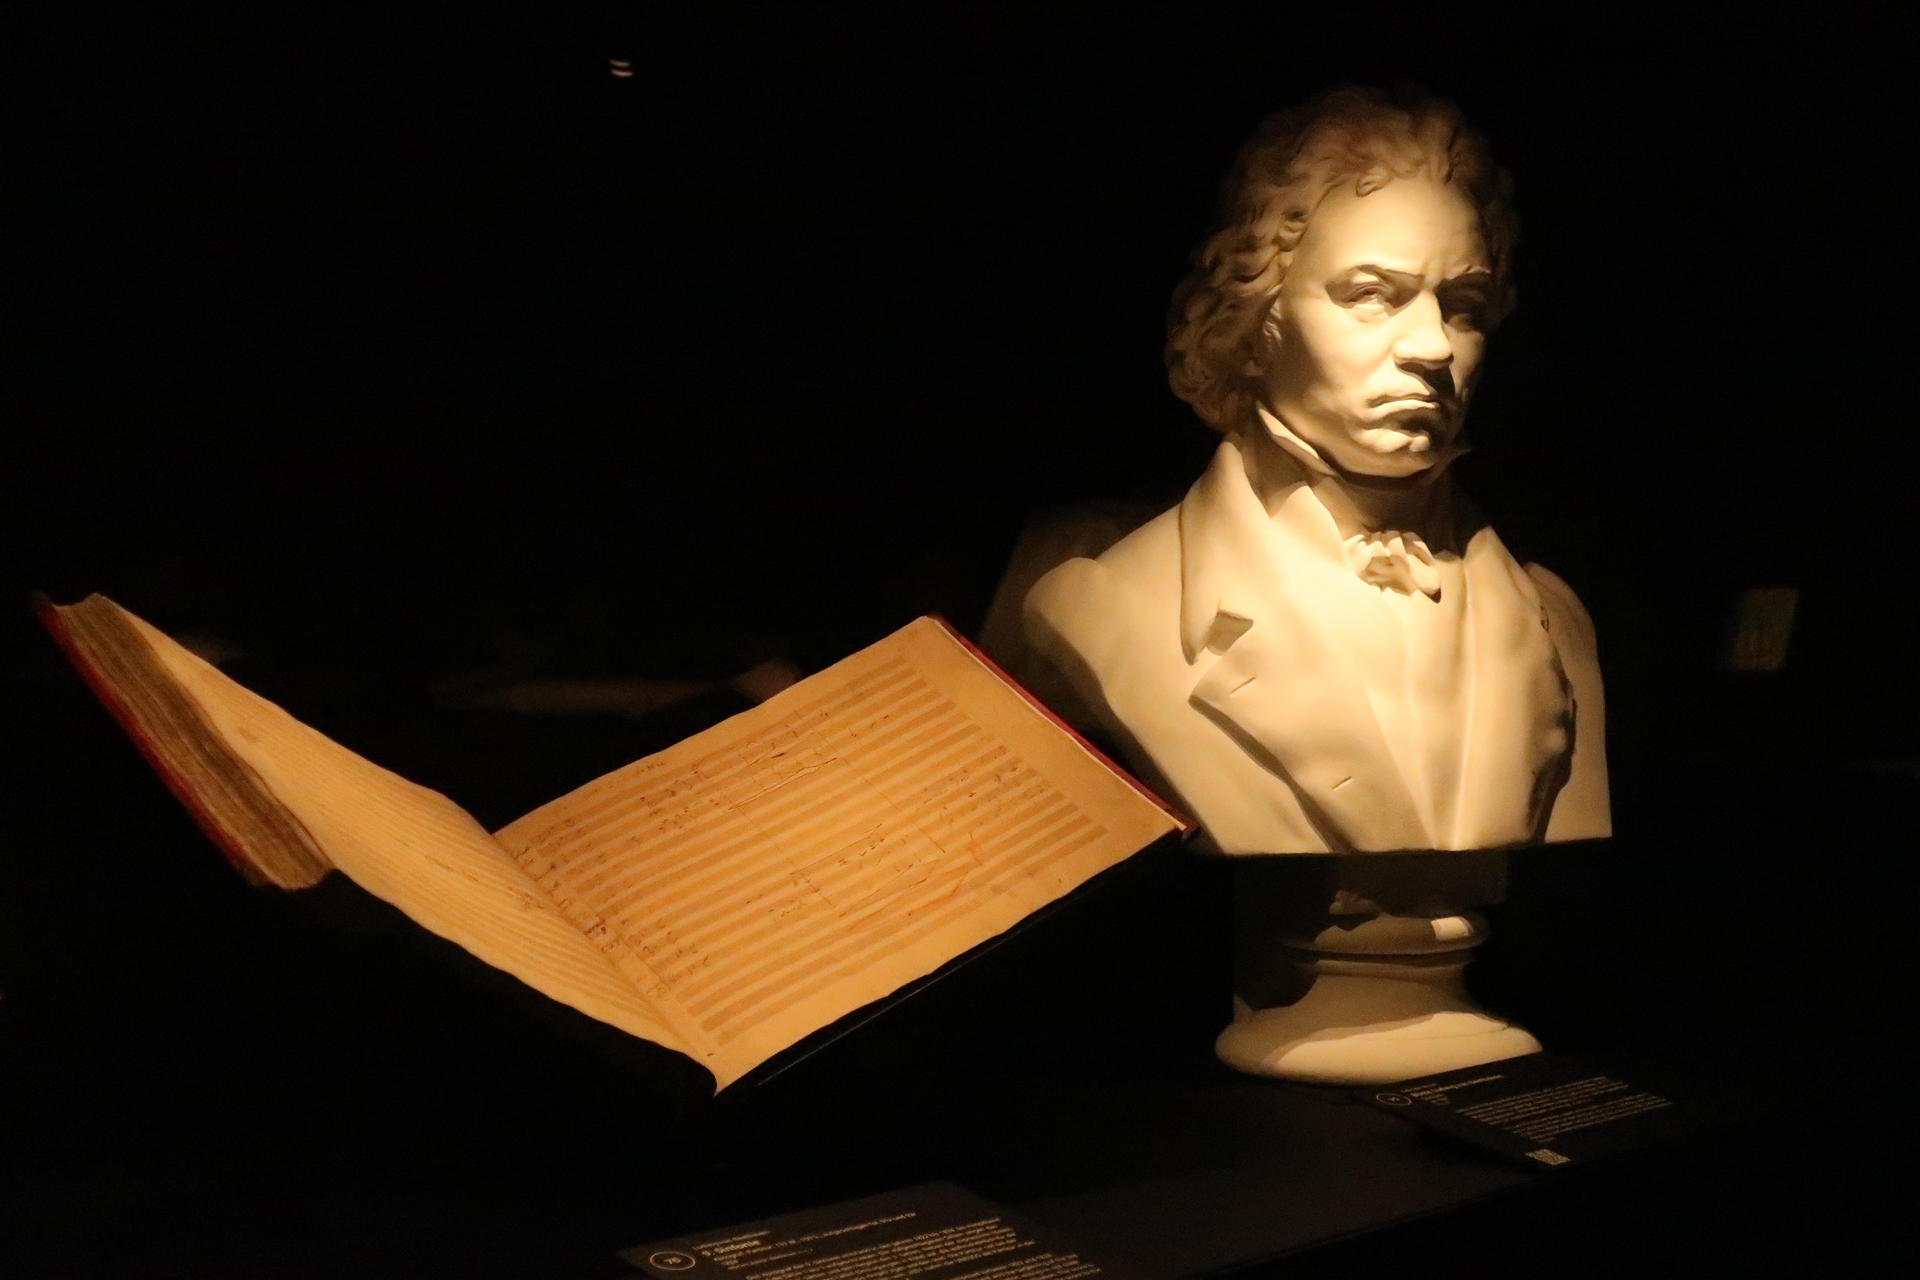 El largo viaje de la Novena de Beethoven a Berlín: dividida y reunificada